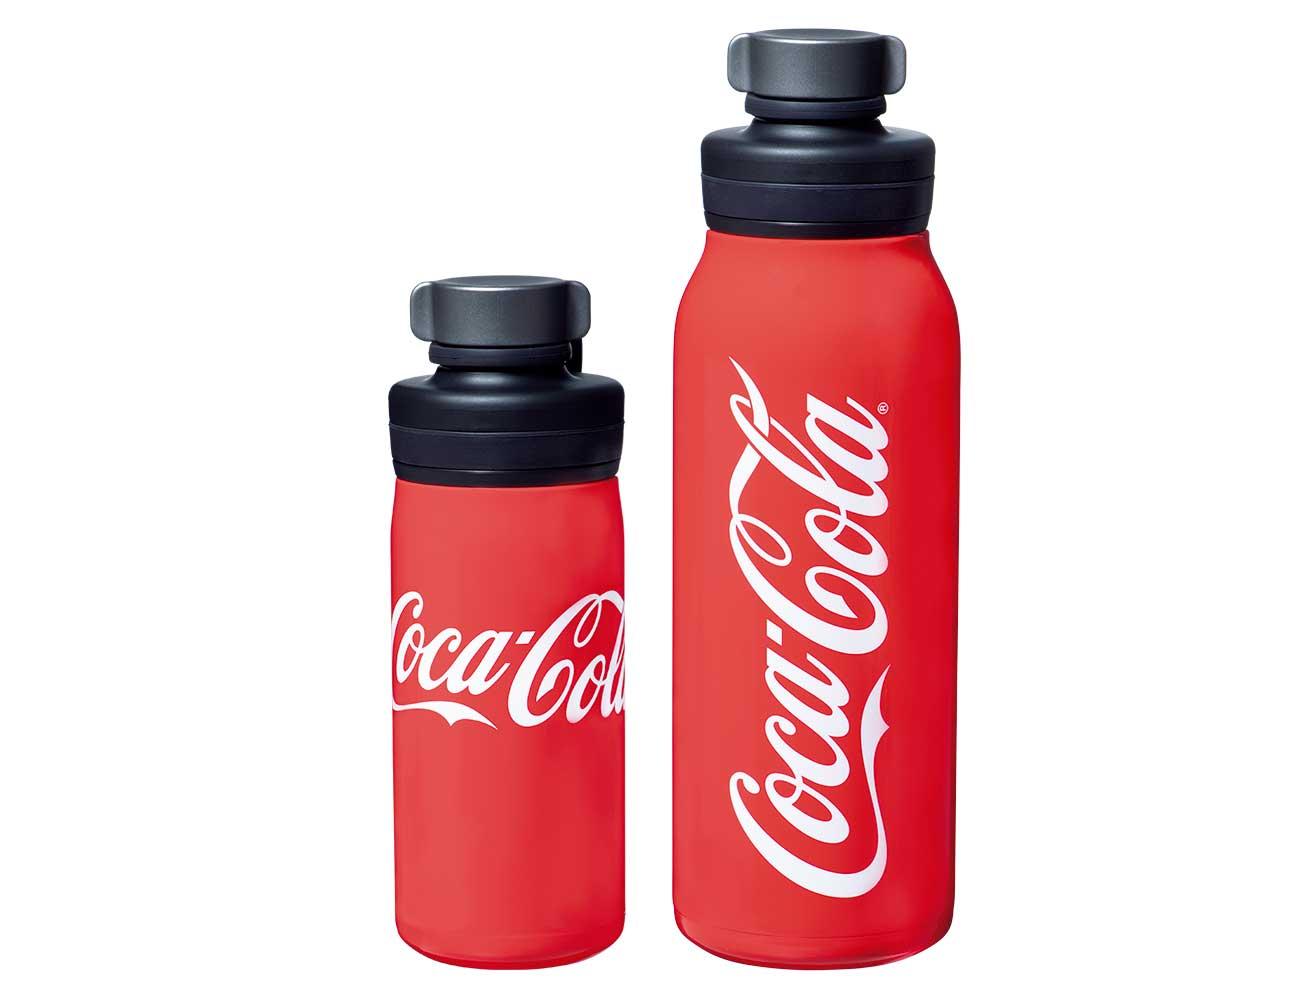 真空断熱炭酸ボトル。すべてオープン価格。(c) 2023 The Coca-Cola Company. All rights reserved.